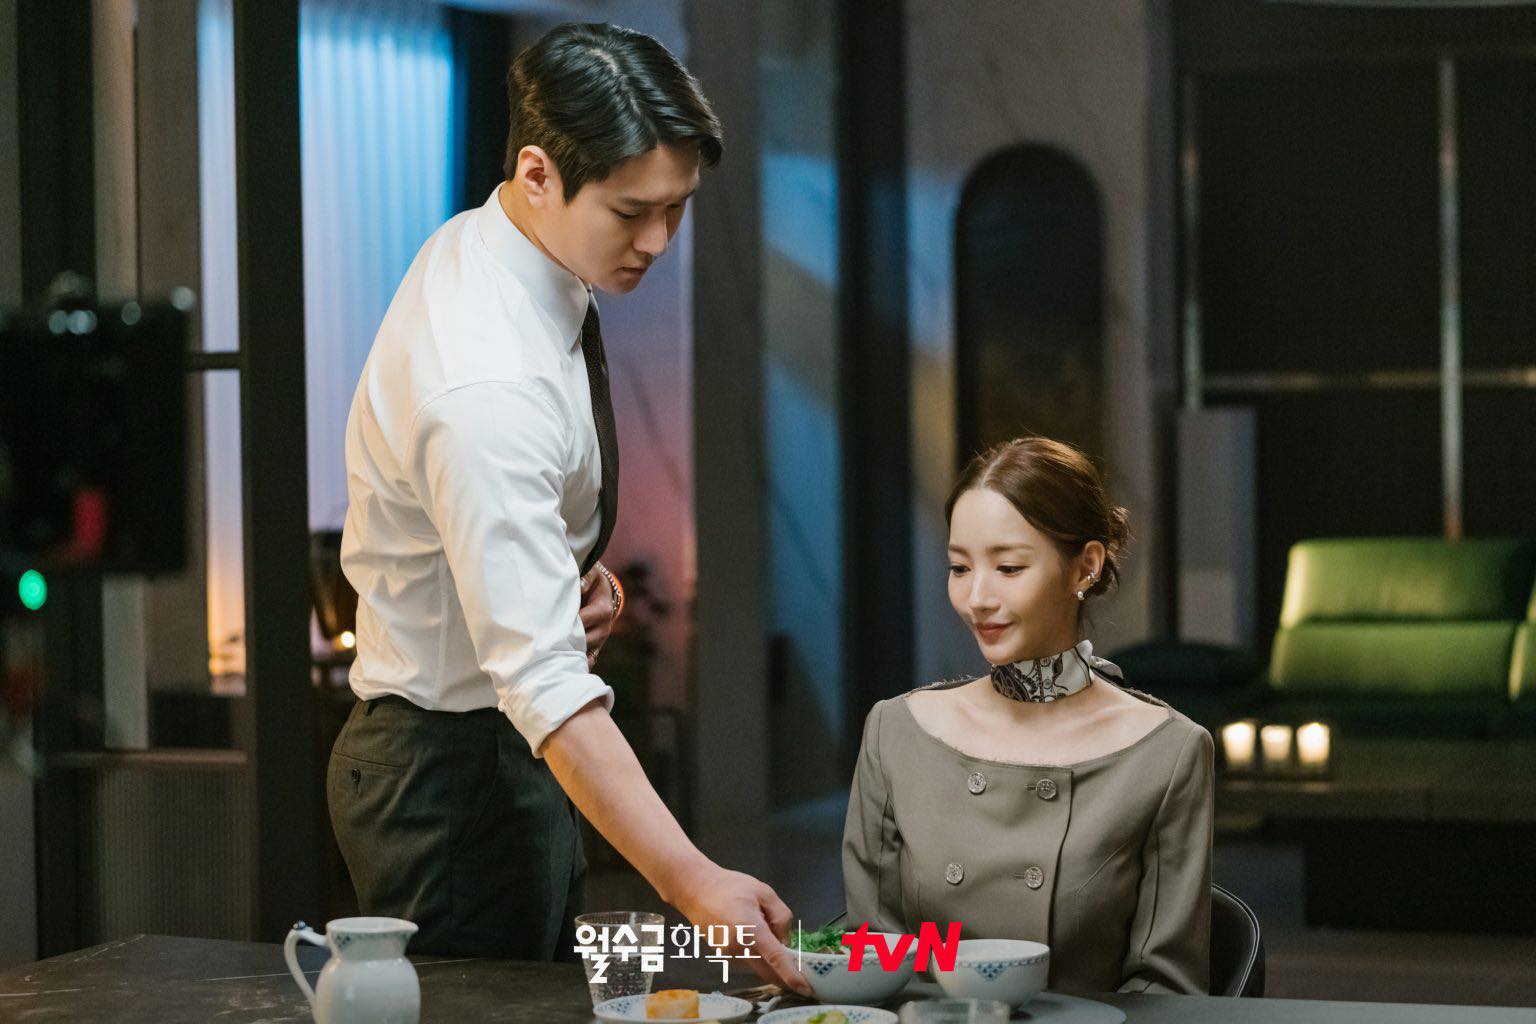 Phim mới của Park Min Young dẫn đầu rating nhưng nhan sắc nữ chính gây hoang mang vì quá khác lạ!-3